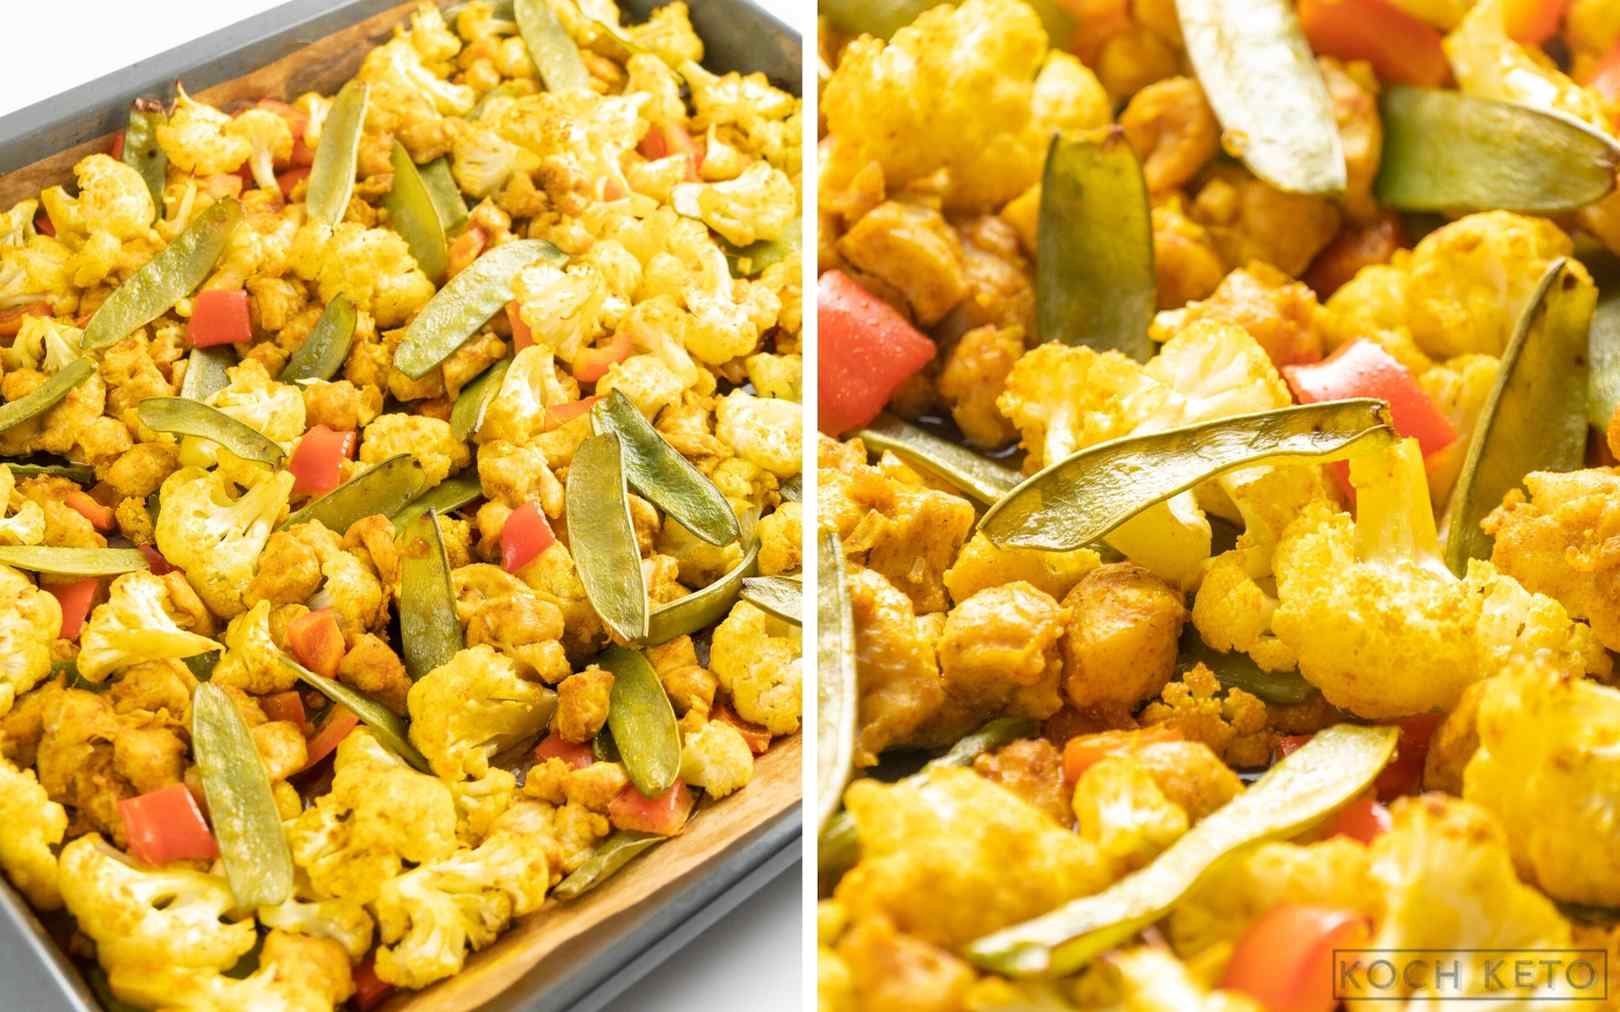 Mega einfaches Low Carb Hähnchen-Curry vom Blech zum schnellen Keto Abendessen Desktop Image Collage